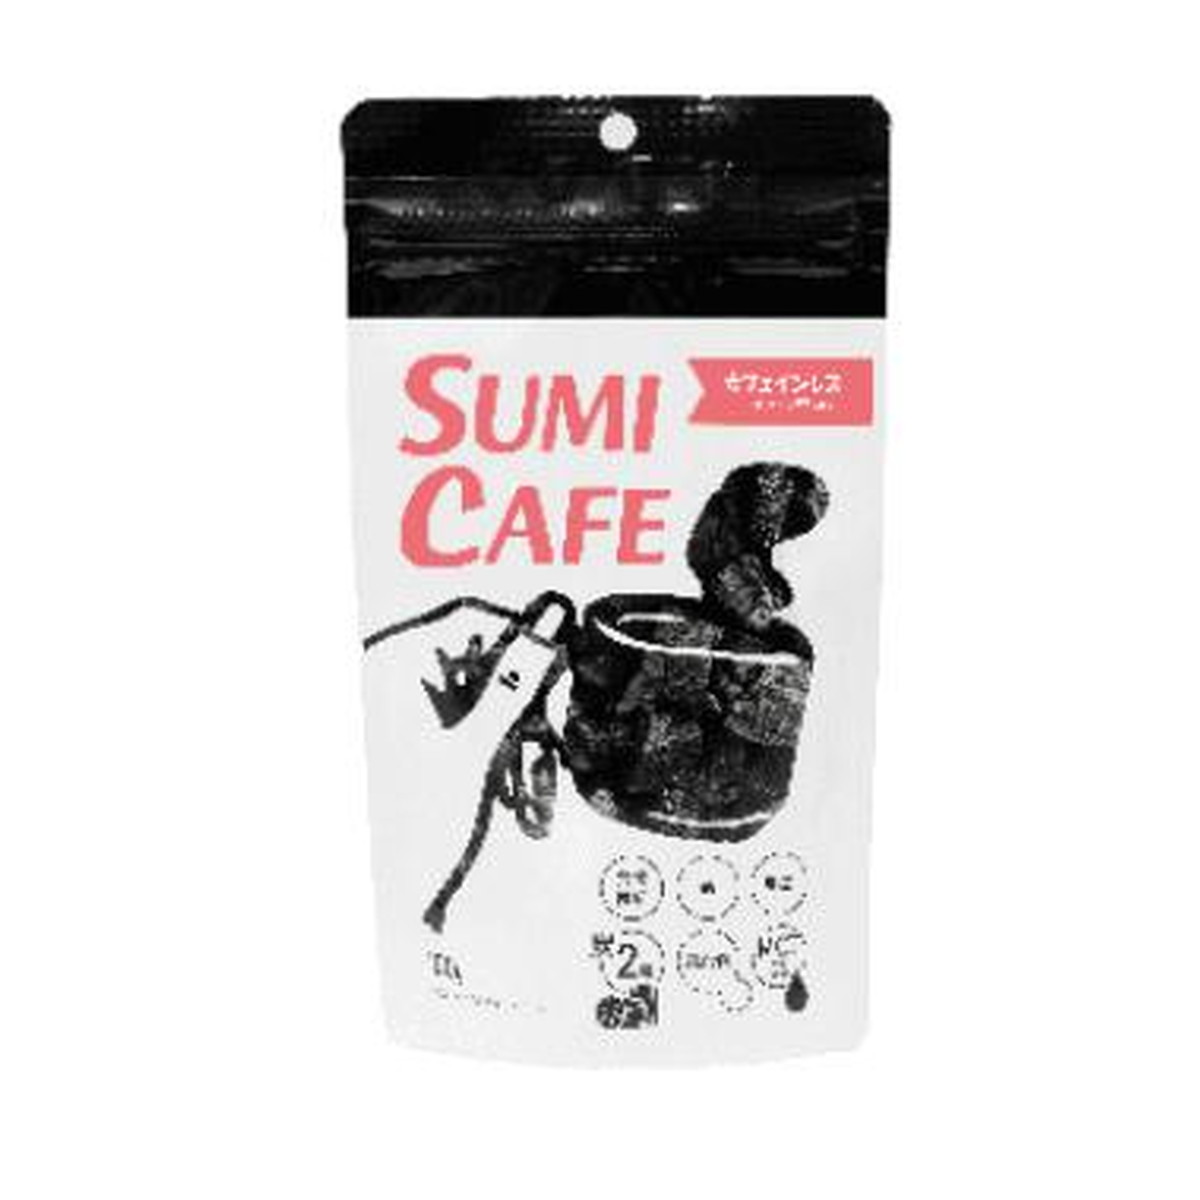 【送料込・まとめ買い×50個セット】リブ・ラボラトリーズ SUMI CAFE カフェインレス 100g